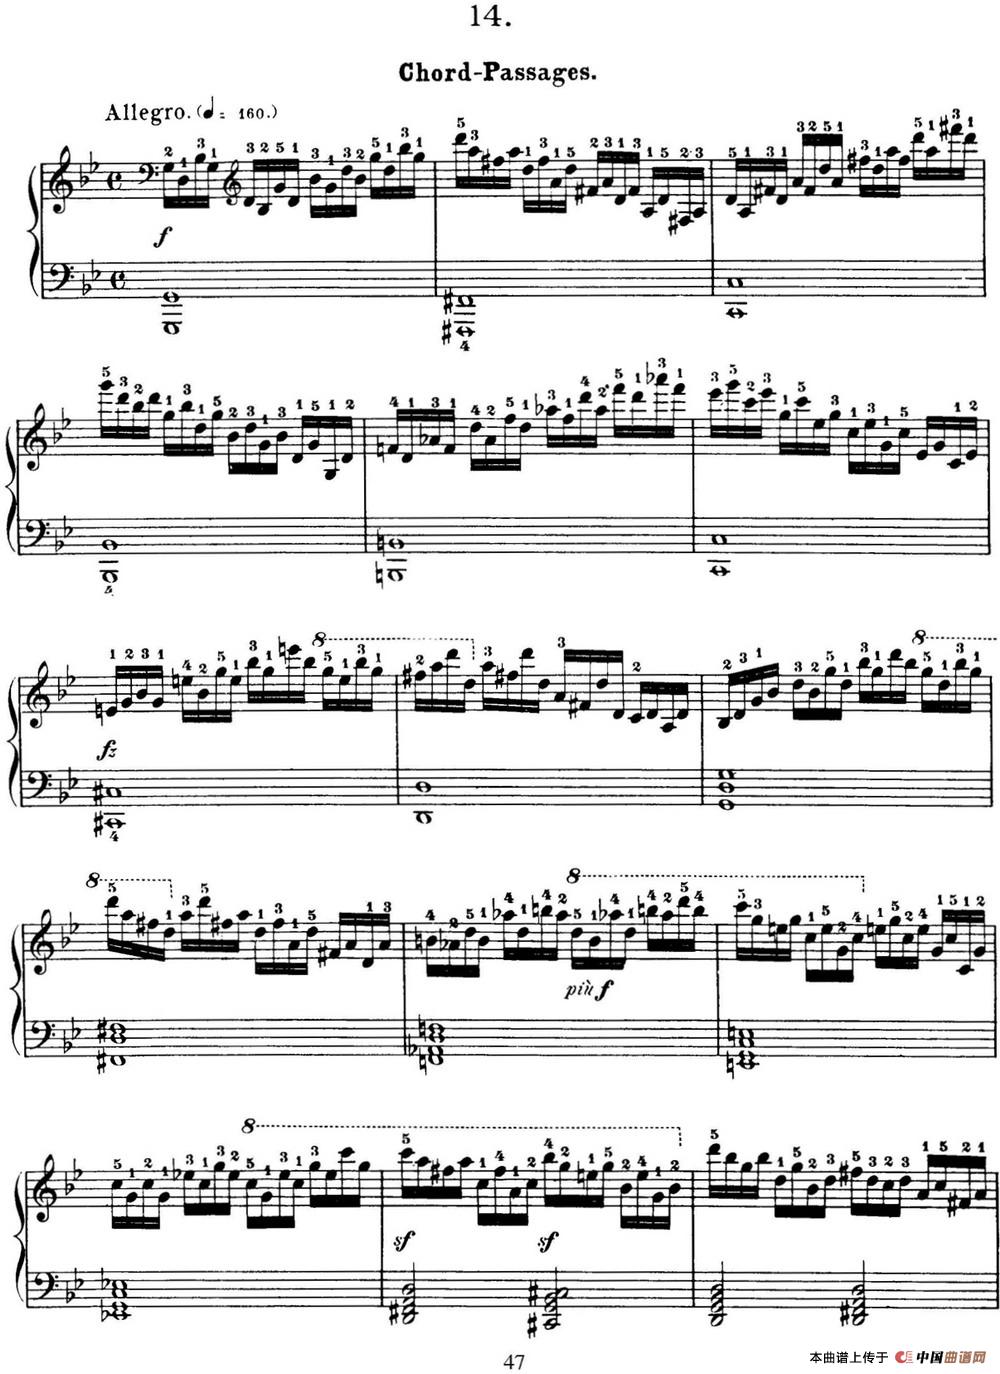 50首车尔尼Op.740钢琴手指灵巧技术练习曲（NO.14）(1)_C740_页面_047.jpg